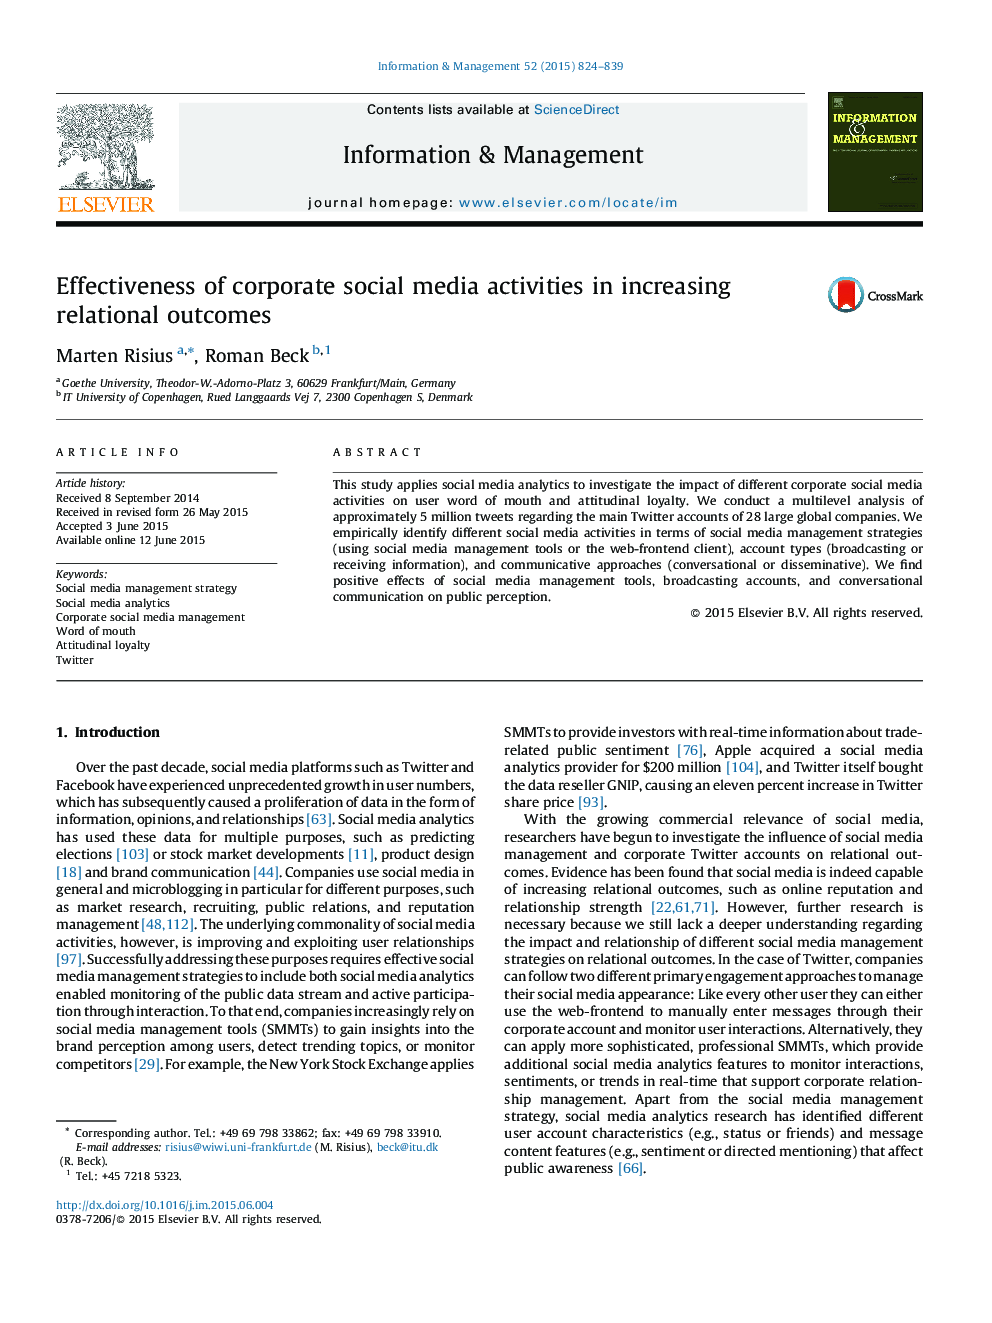 اثربخشی فعالیت های رسانه های اجتماعی سازمانی در افزایش نتایج رابطه ای